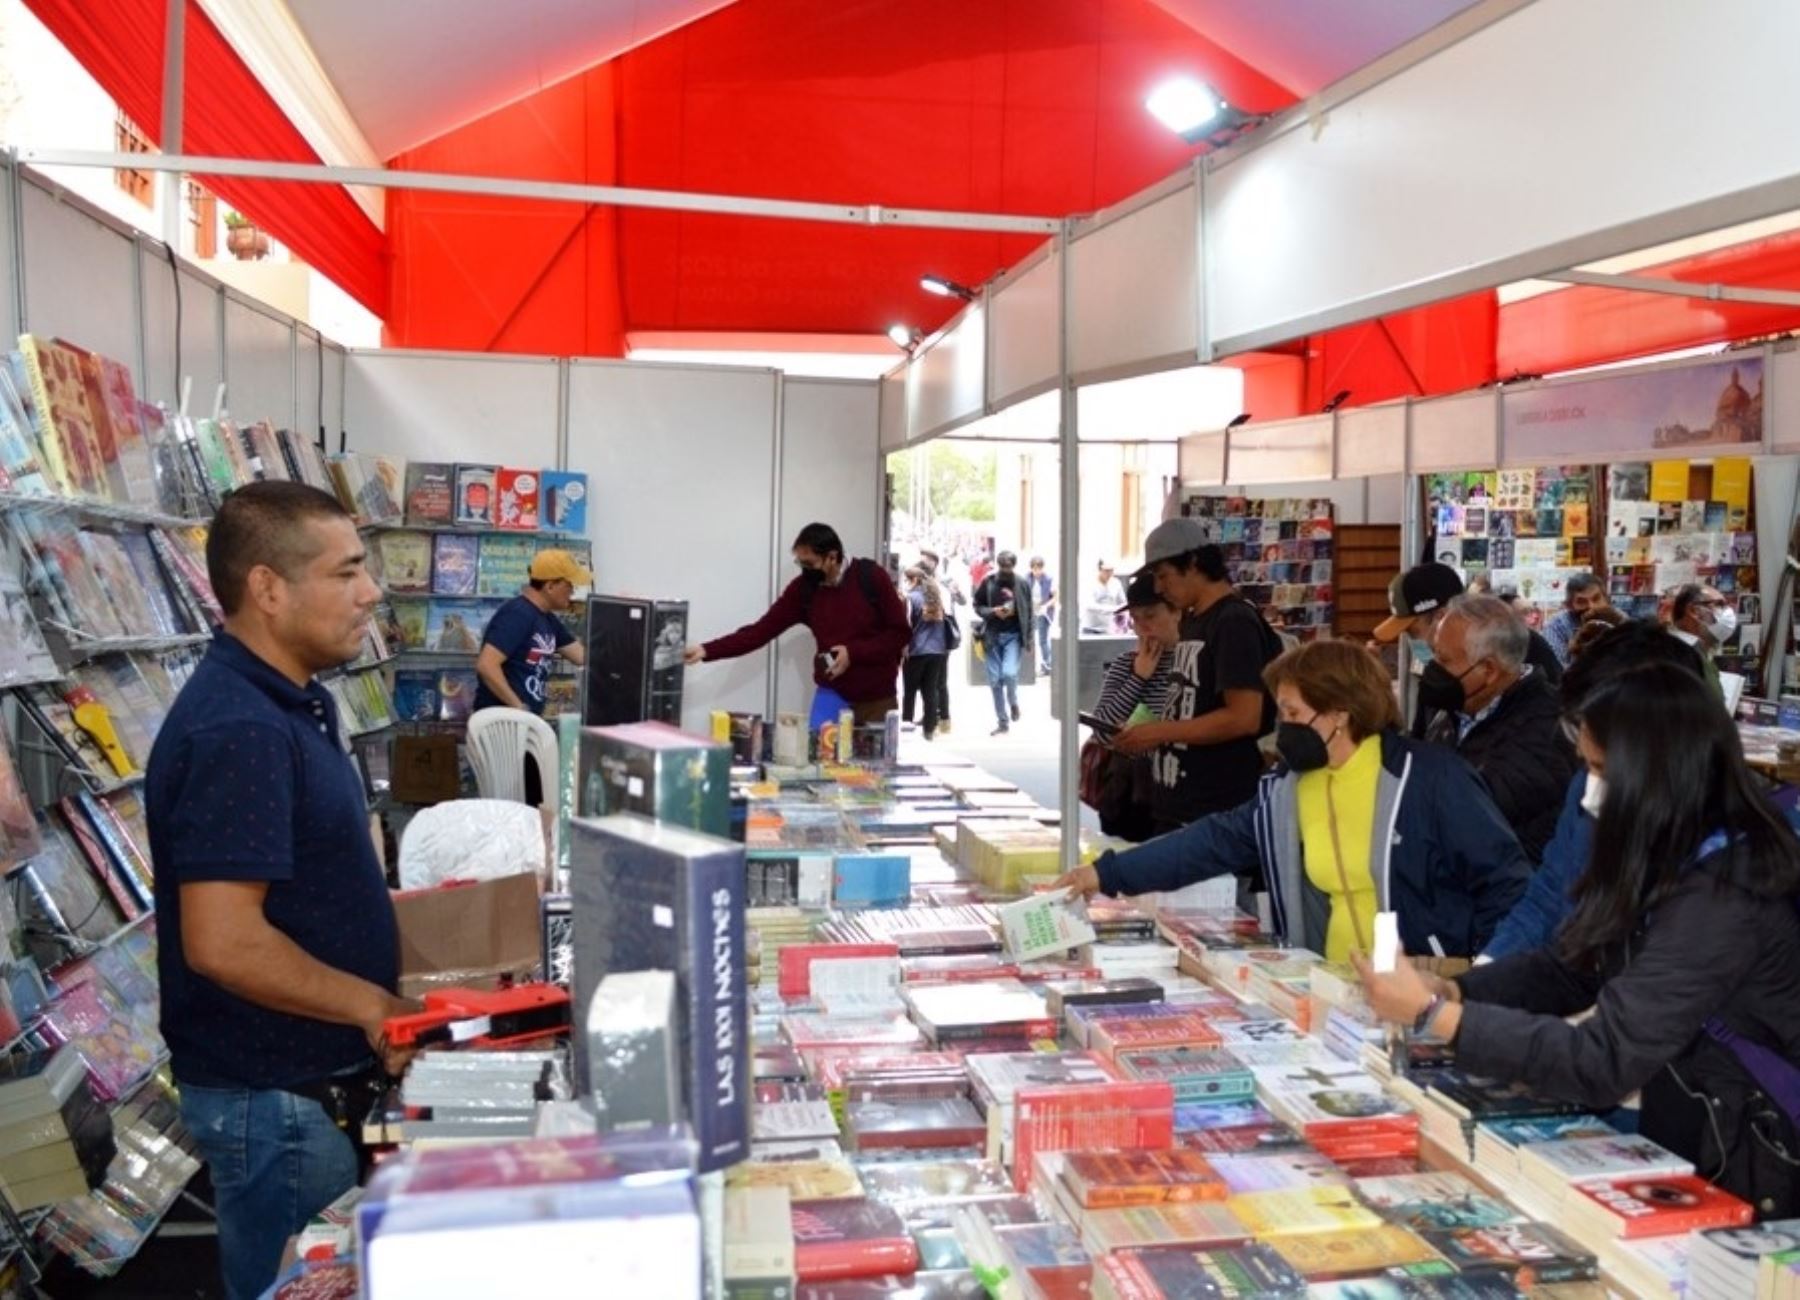 Hasta el martes 4 de octubre se desarrollará la Feria del Libro de Cajamarca y los organizadores esperan recibir más de 50,000 visitas.